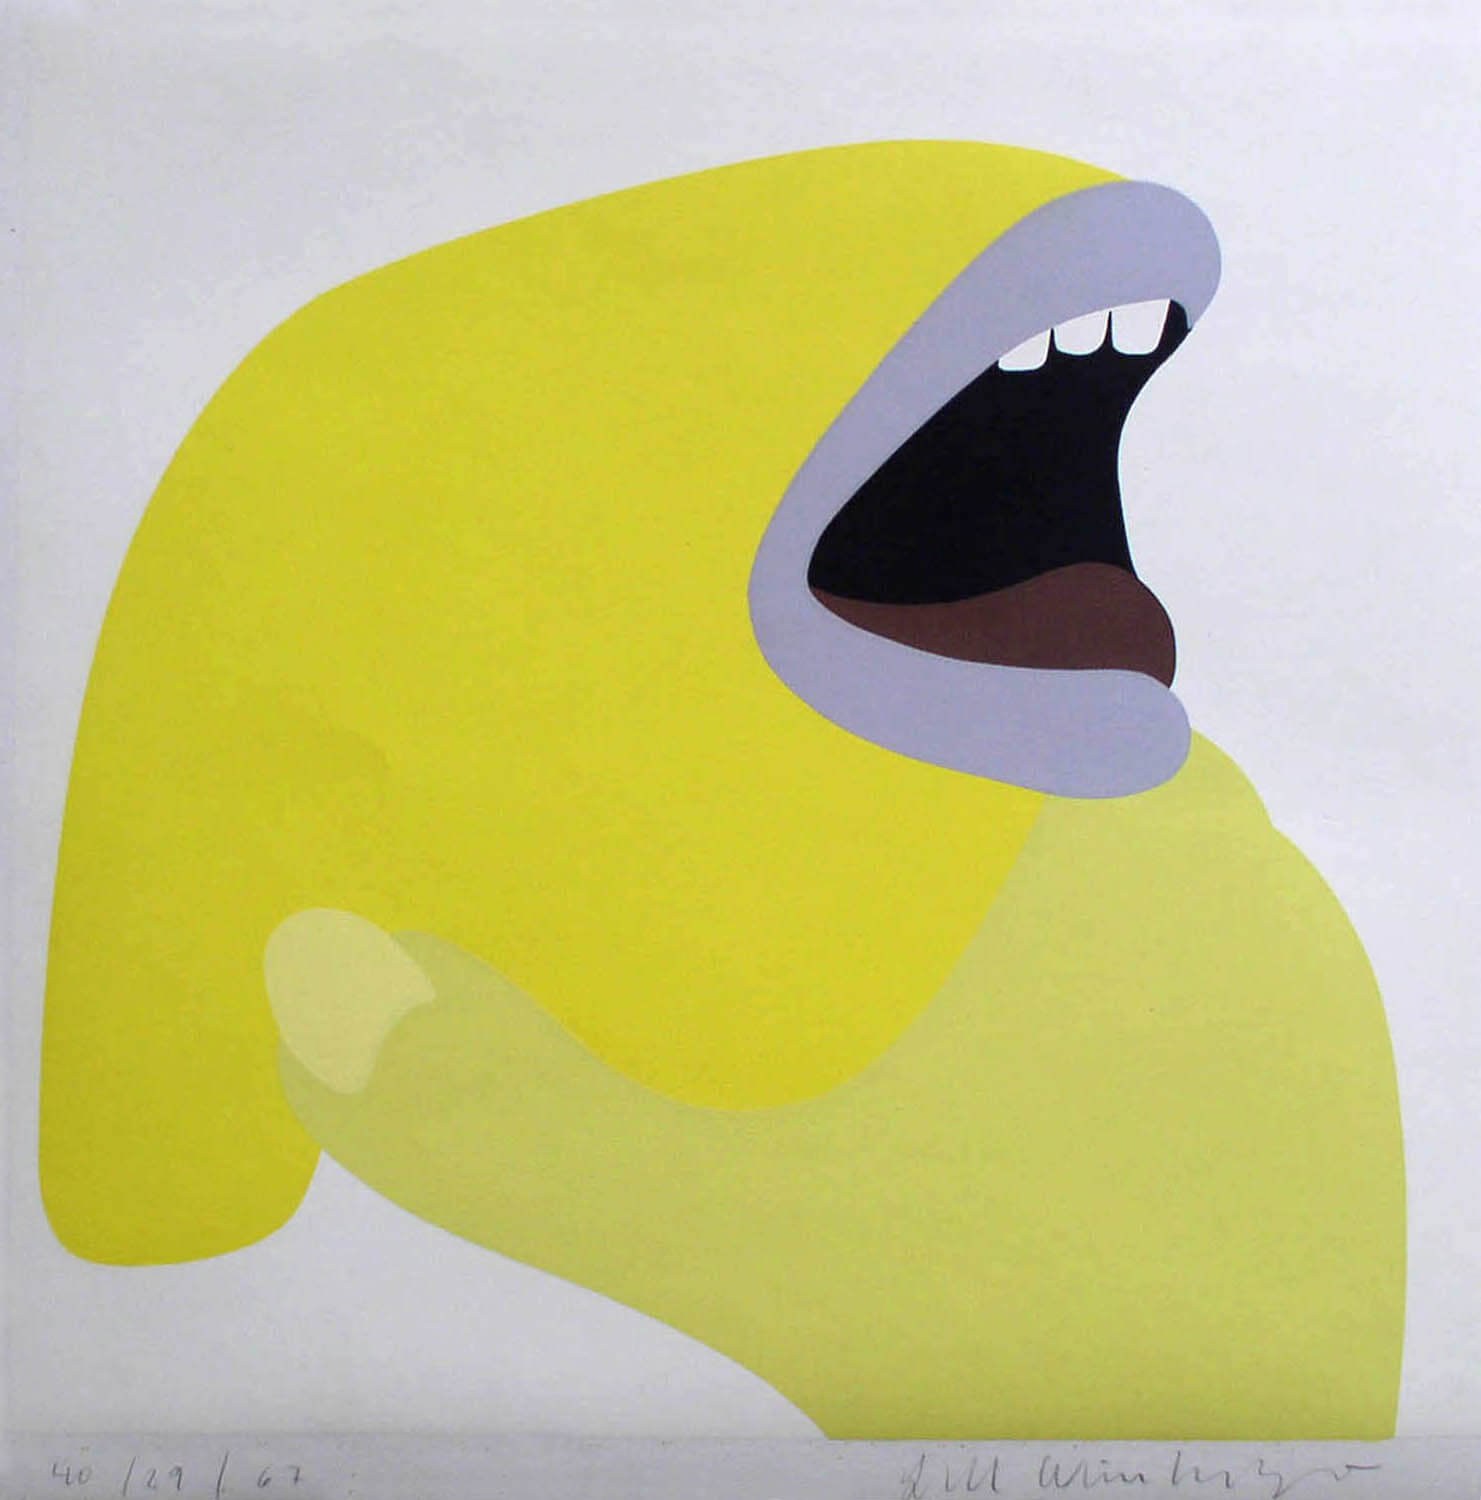 LW_ohne Titel (Kopf, gelb)_1967